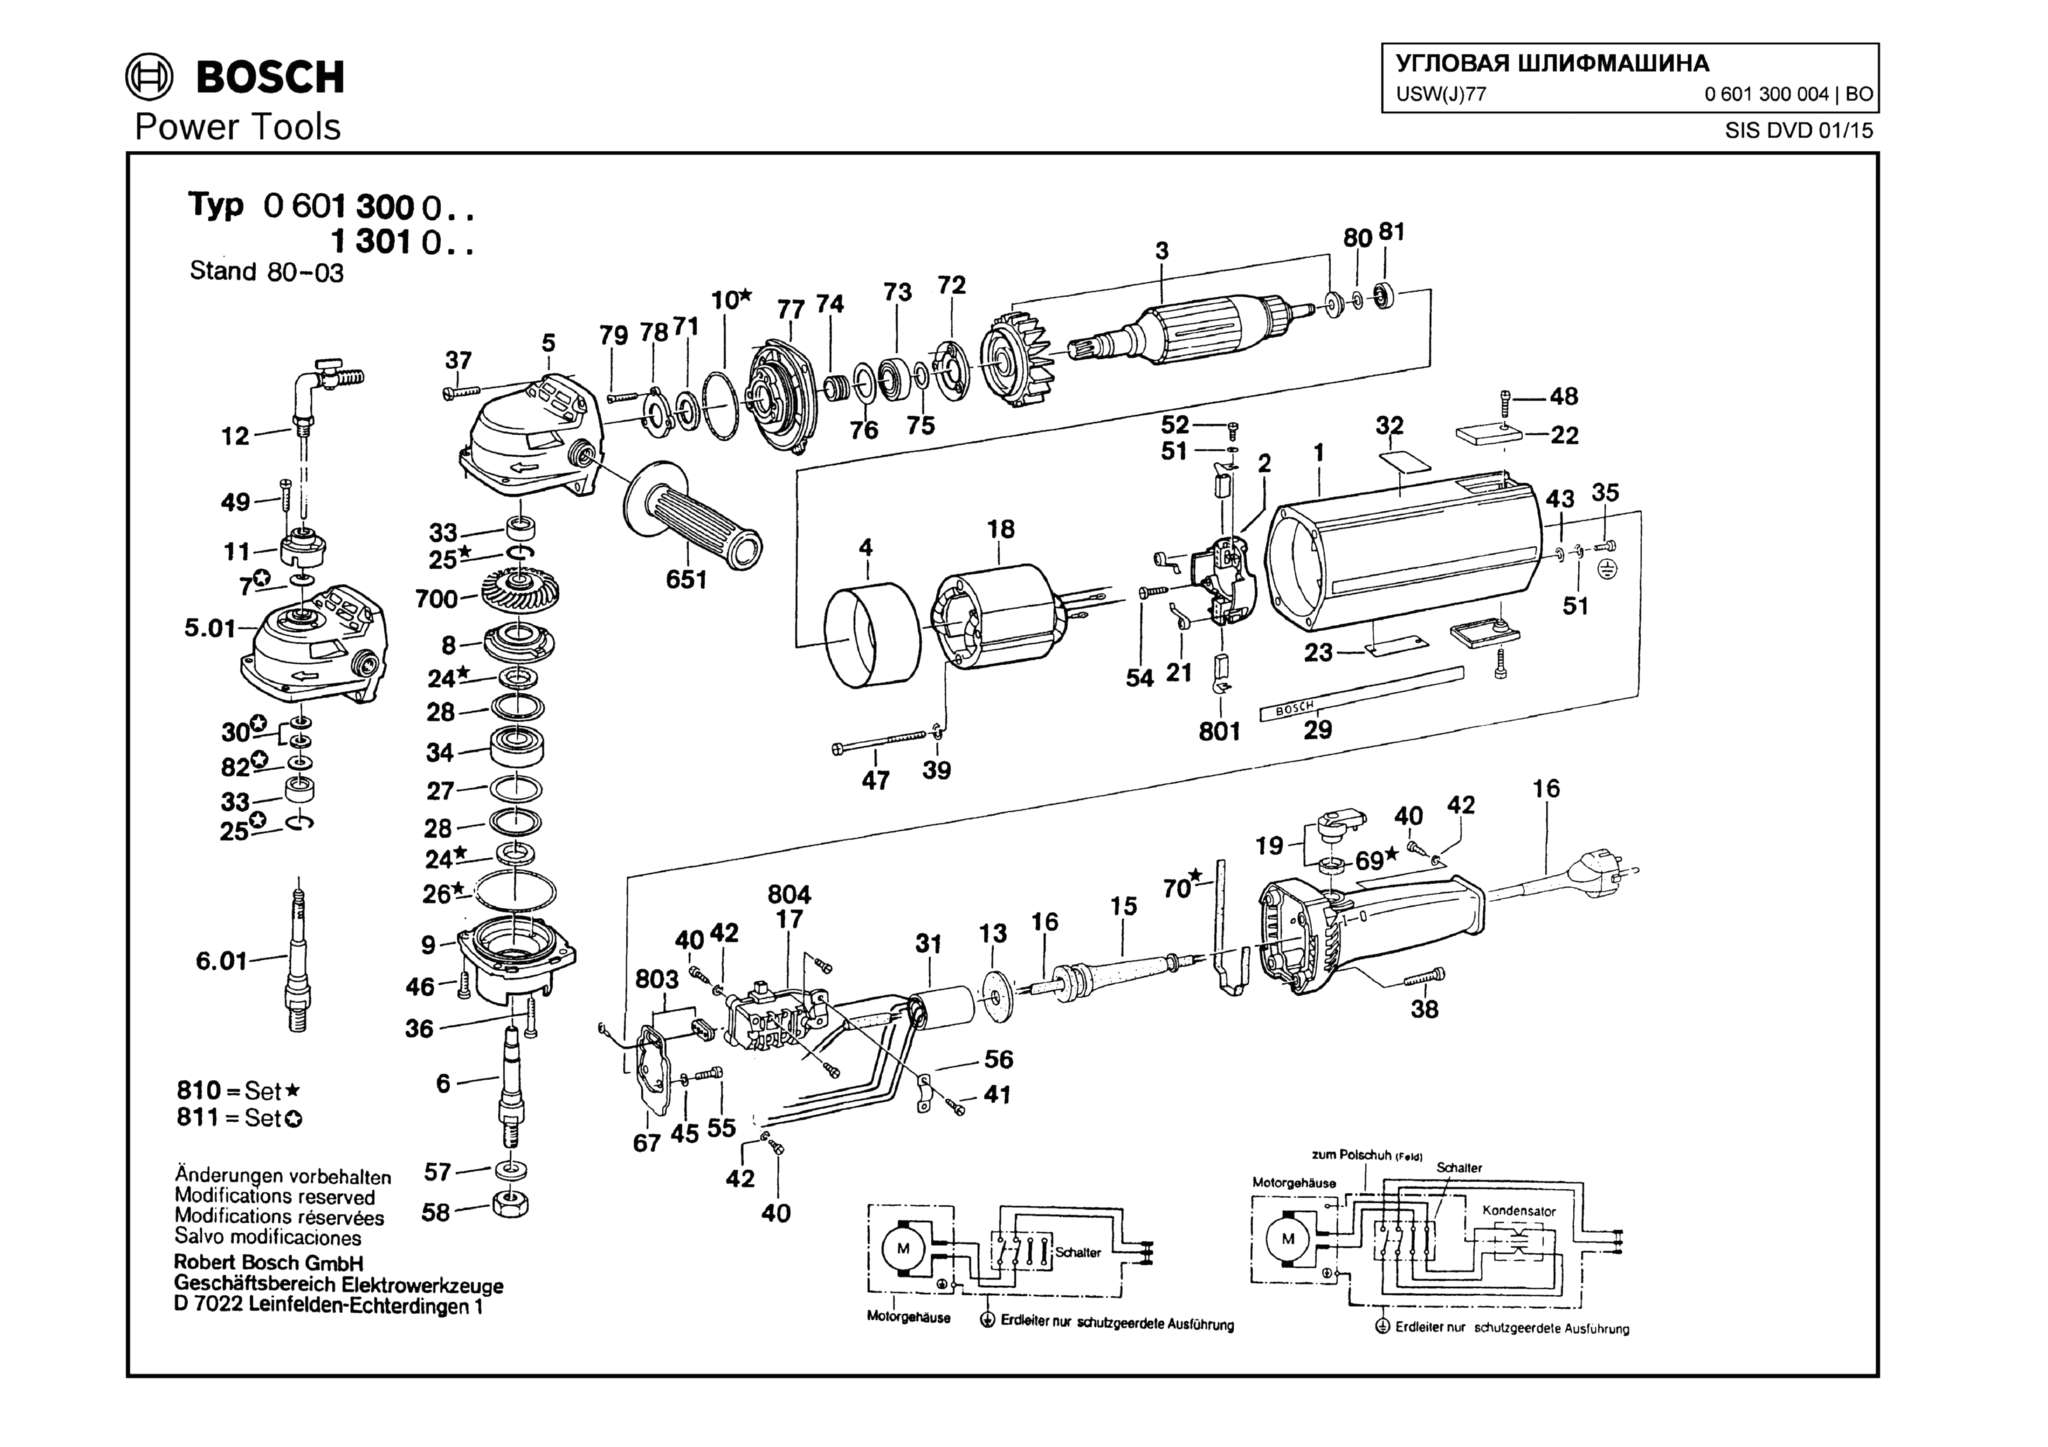 Запчасти, схема и деталировка Bosch USW(J)77 (ТИП 0601300004)